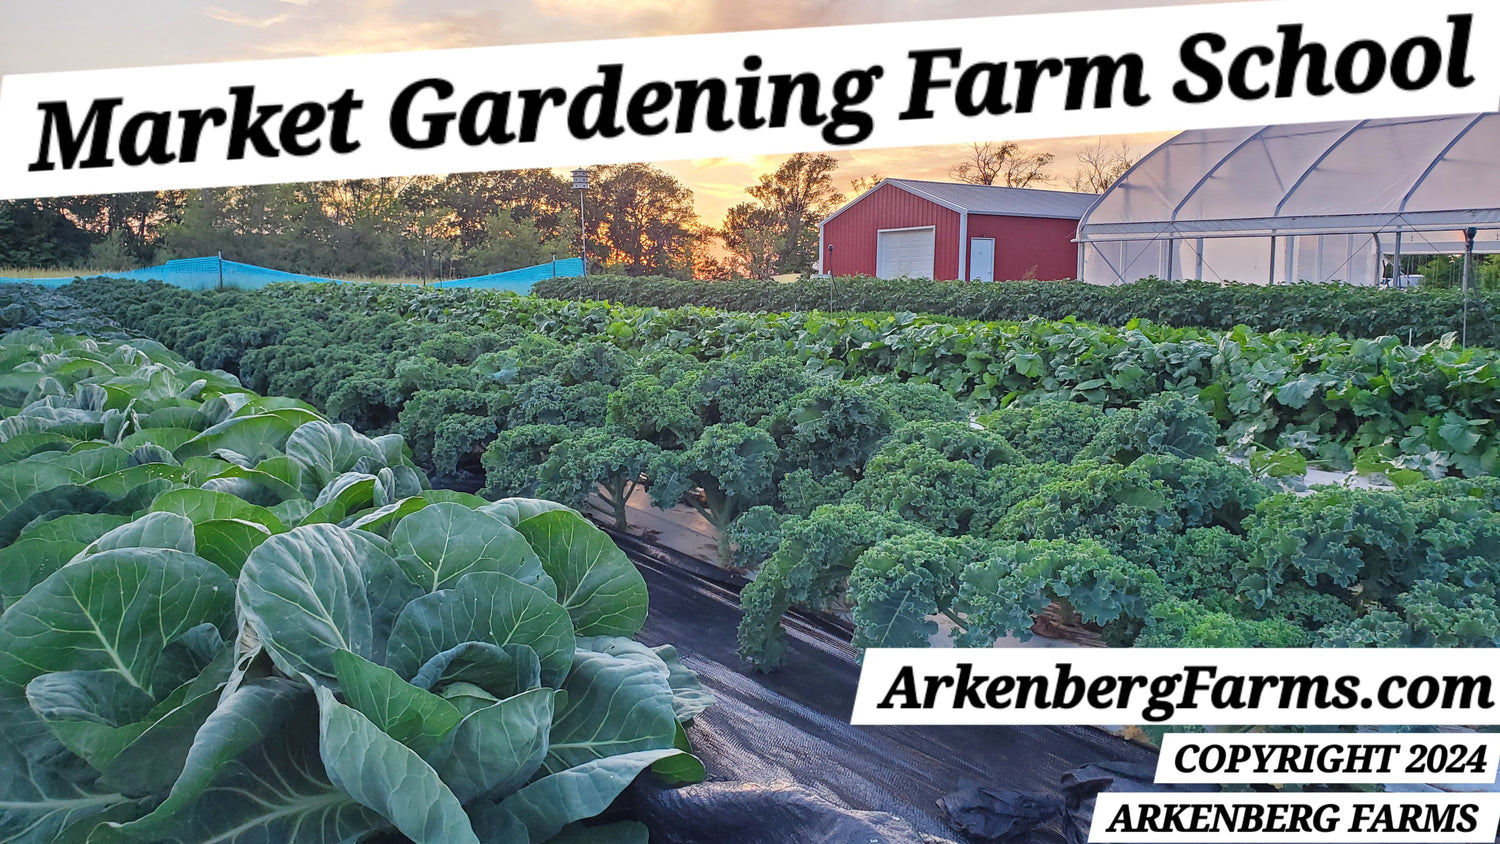 Arkenberg Farms Market Gardening Farm School with Digital Tools & Training